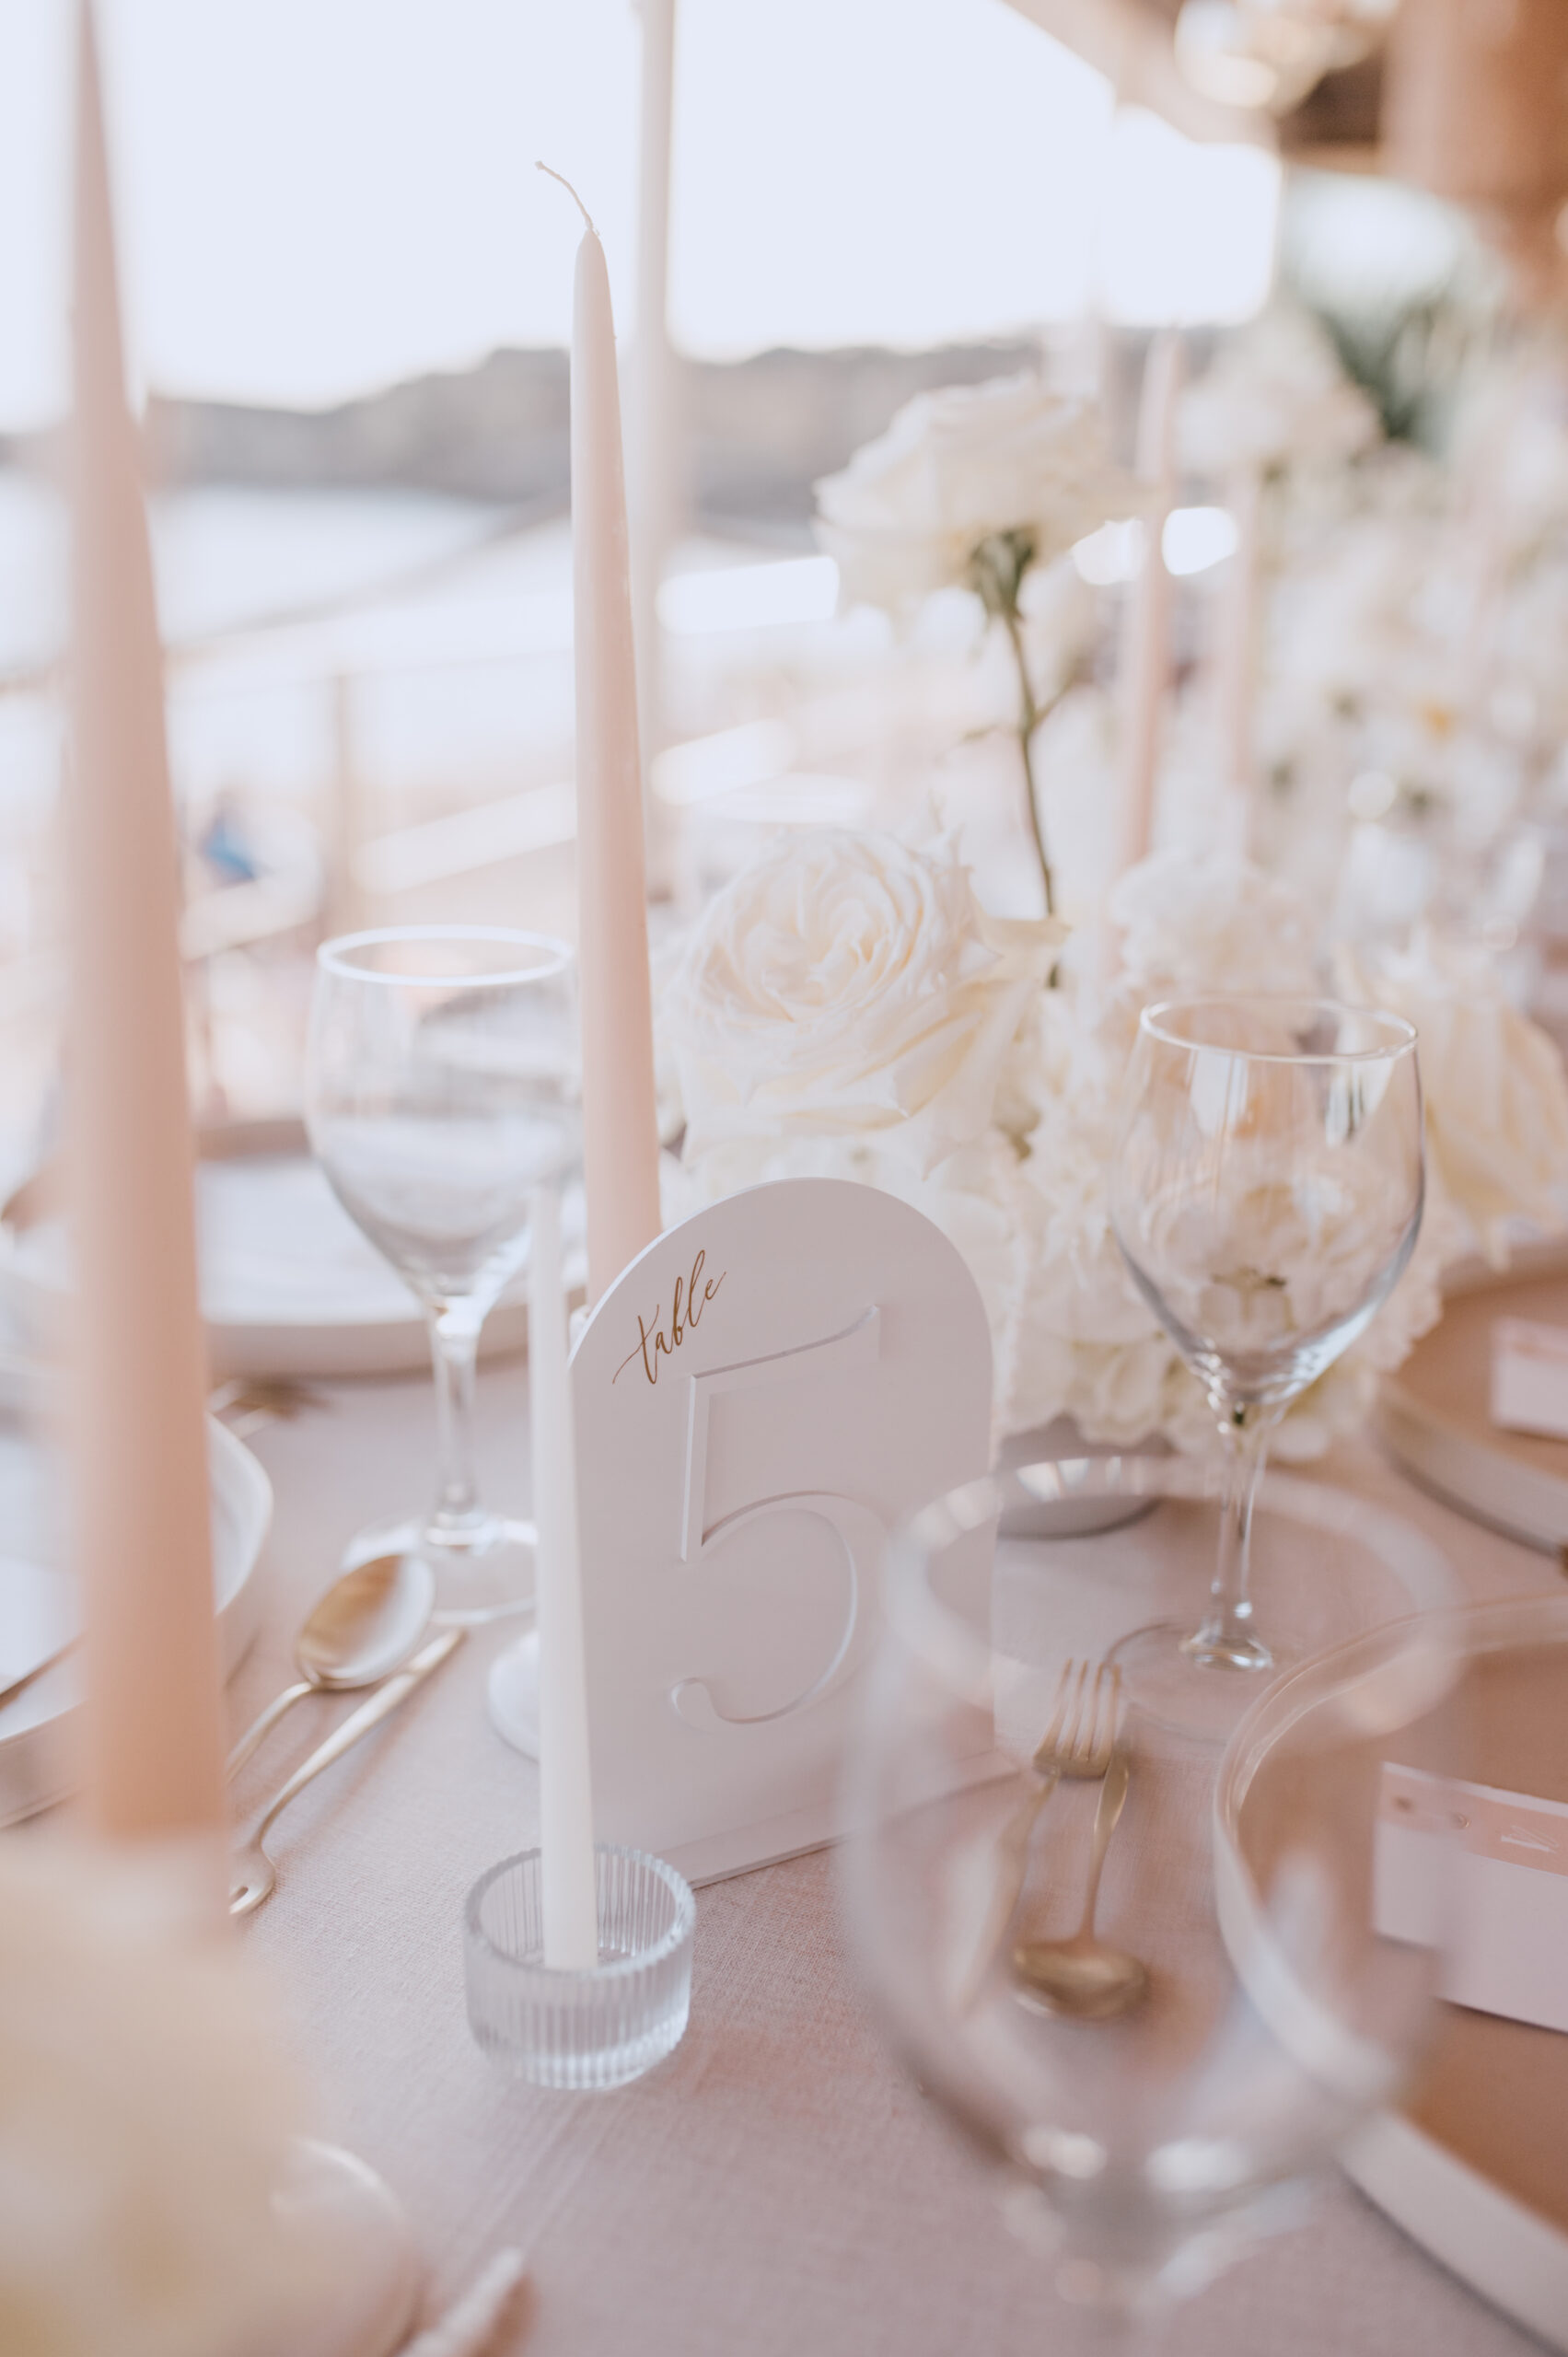 Marcador de mesa em acrílico branco como elemento de decoração para mesa de casamento